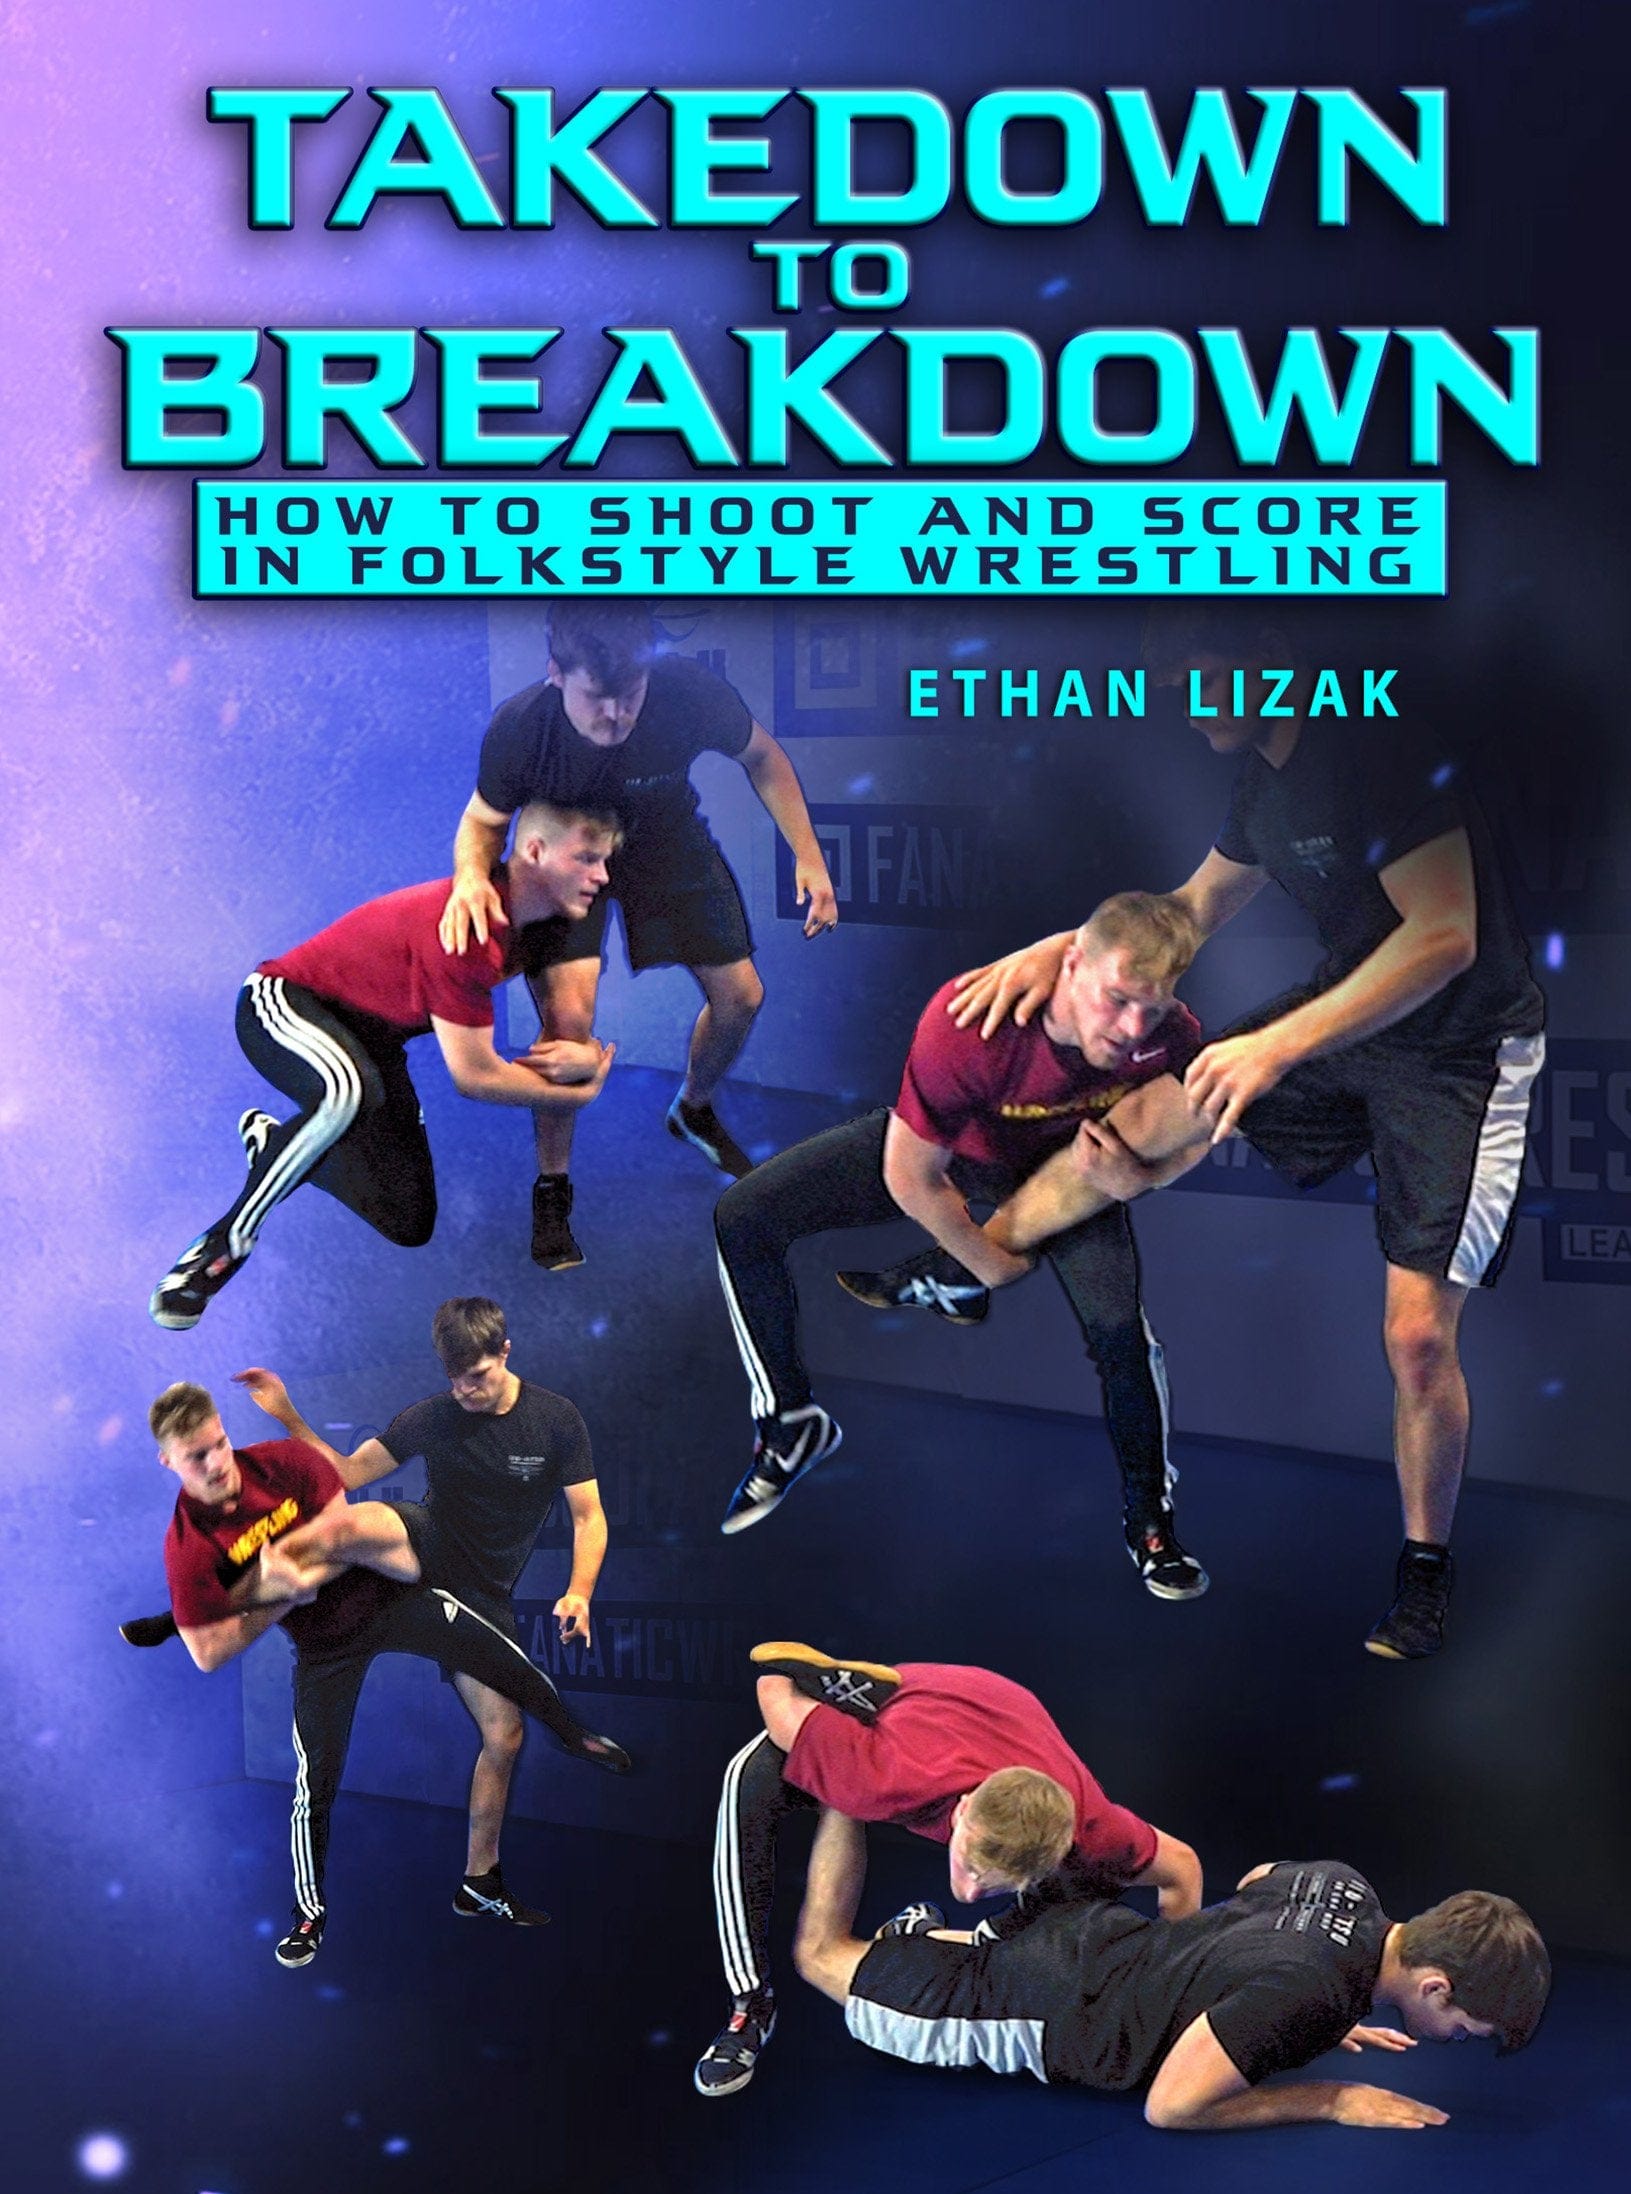 Takedown to Breakdown by Ethan Lizak - Fanatic Wrestling